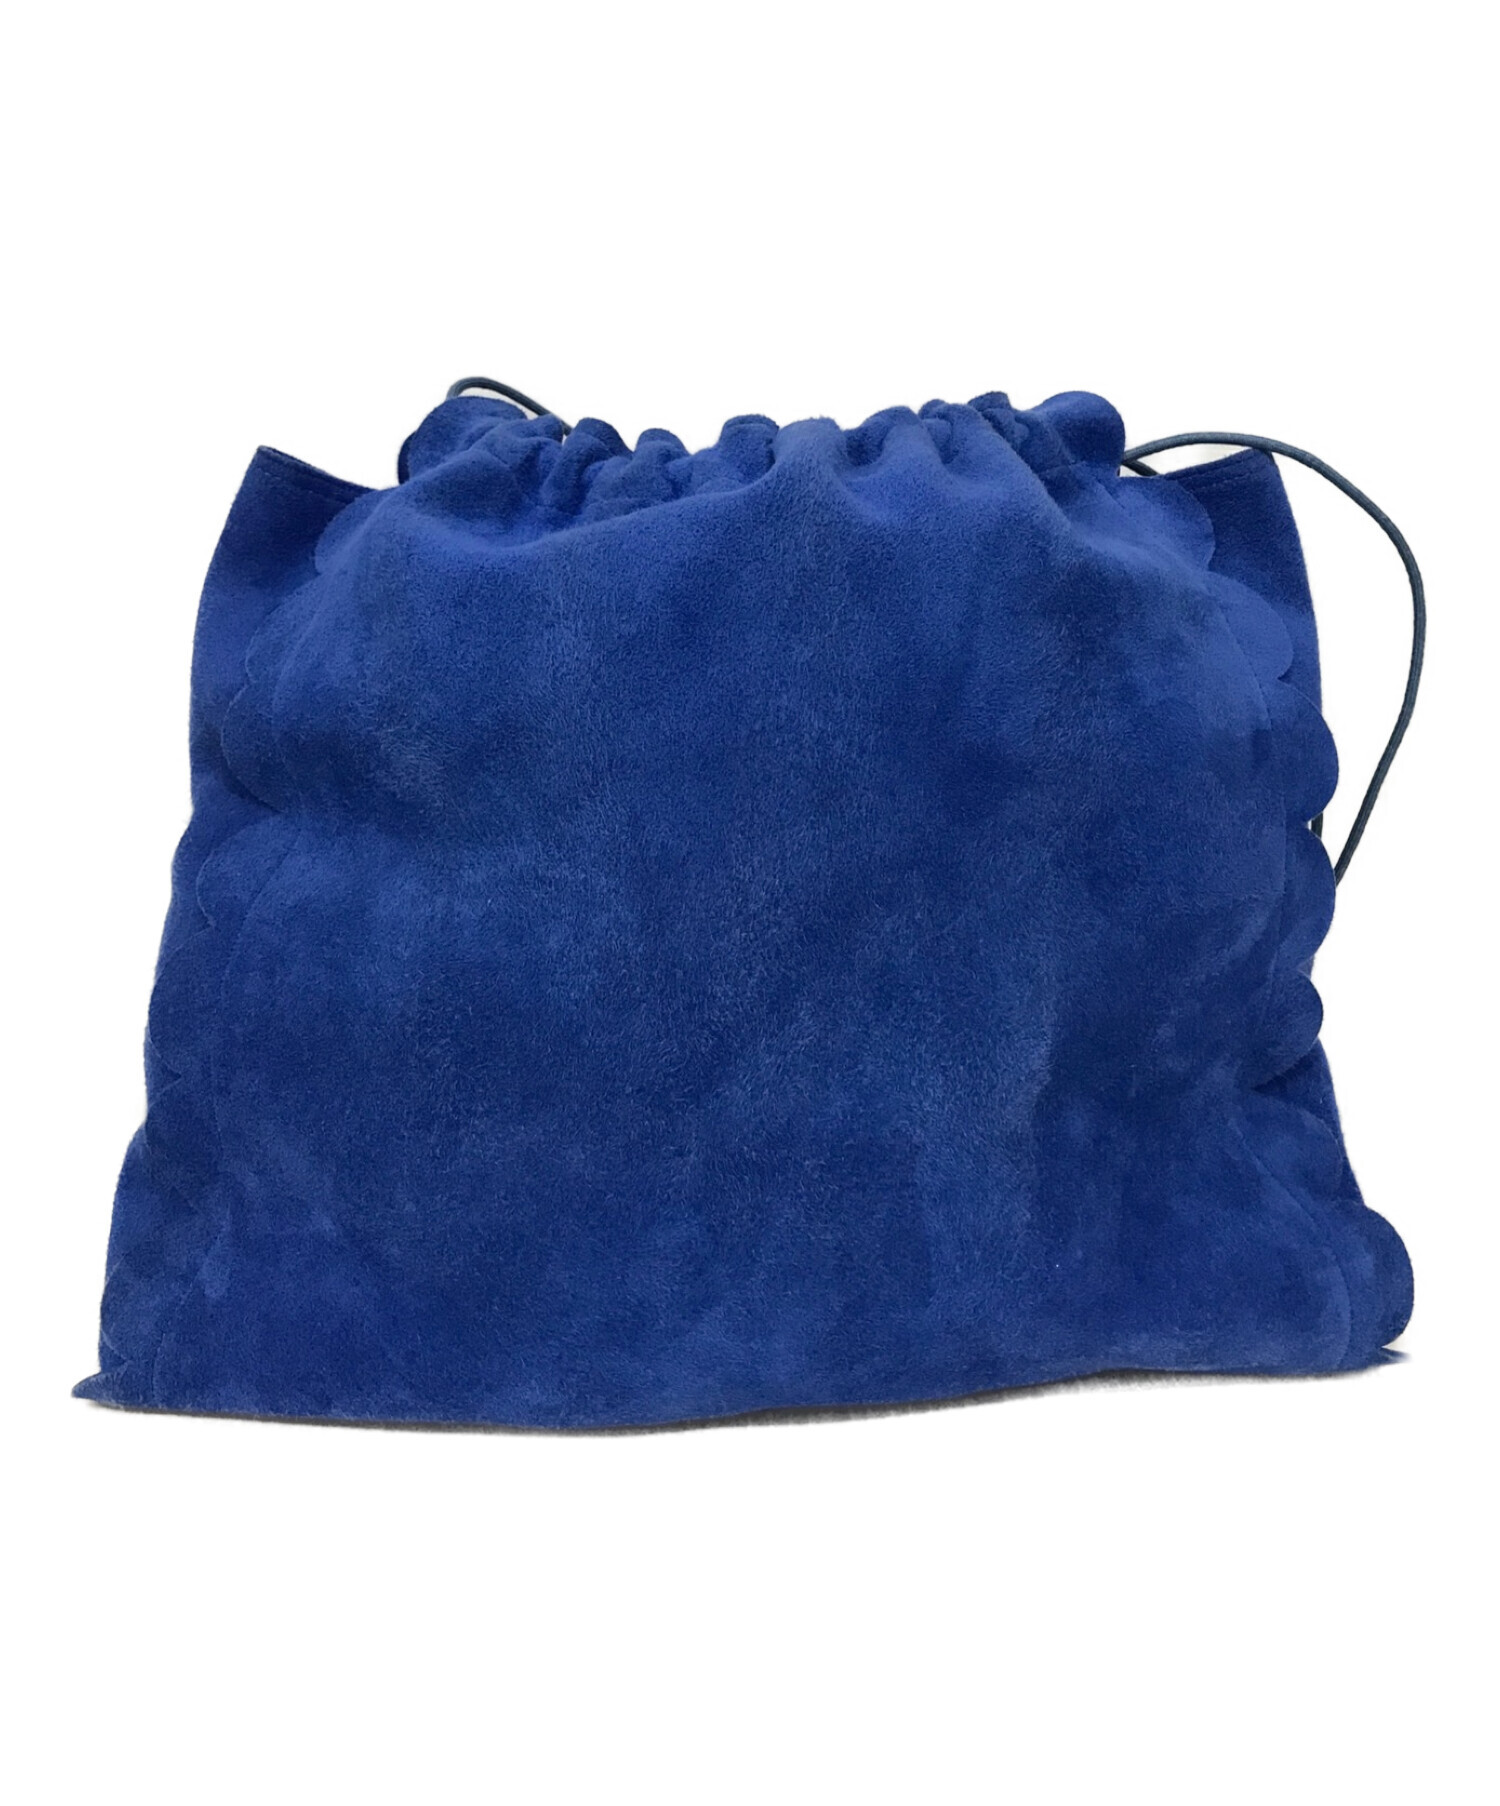 LUDLOW (ラドロー) スカラップ巾着バッグ ブルー